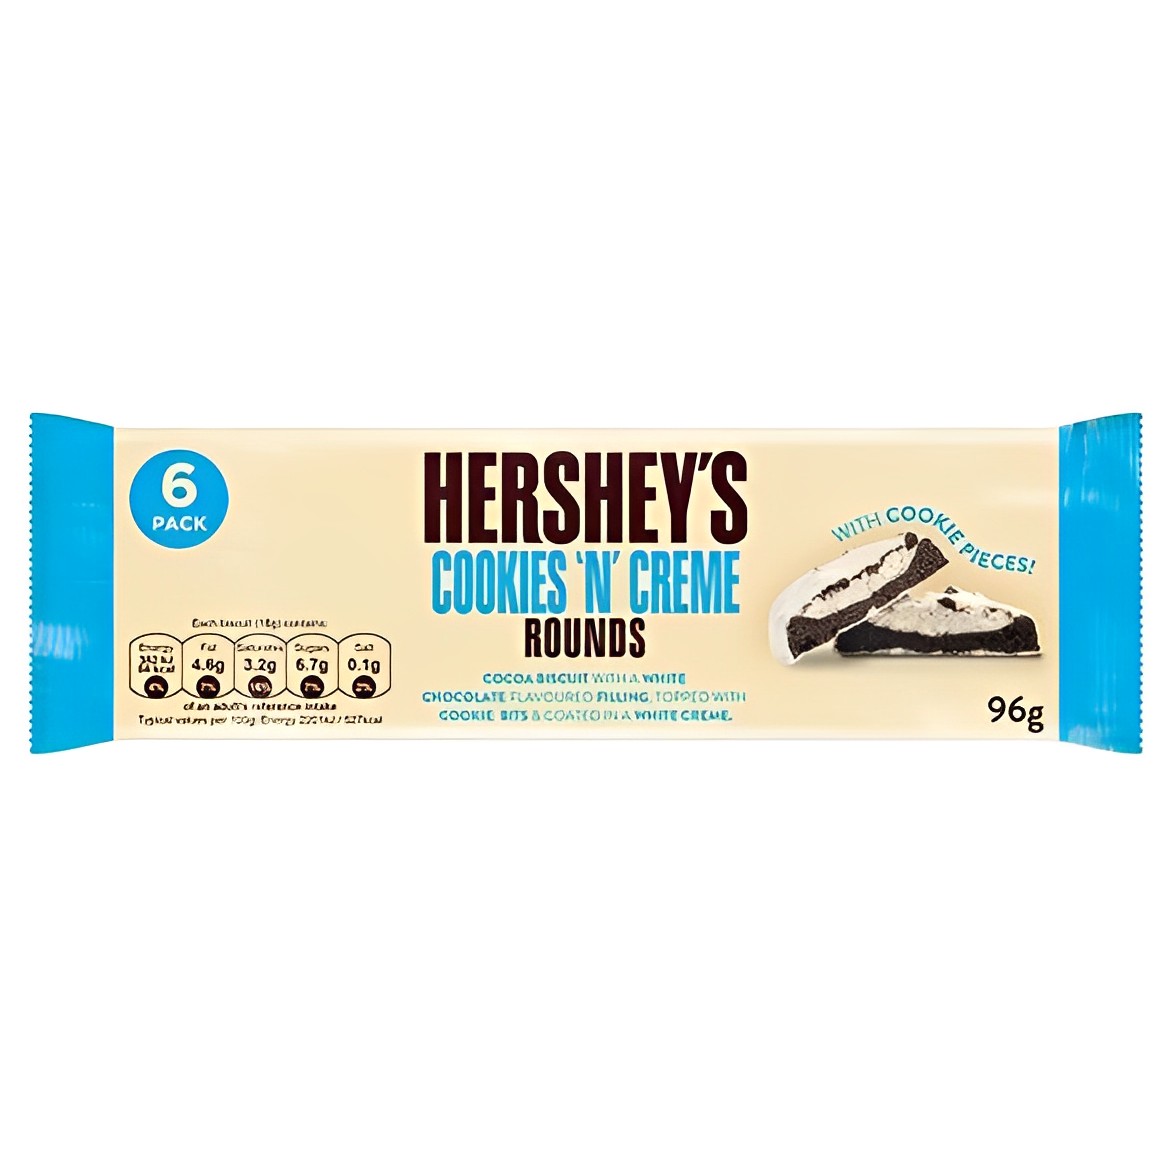 Šokoladiniai saldainiai HERSHEY'S (ROUNDS), 96g photo